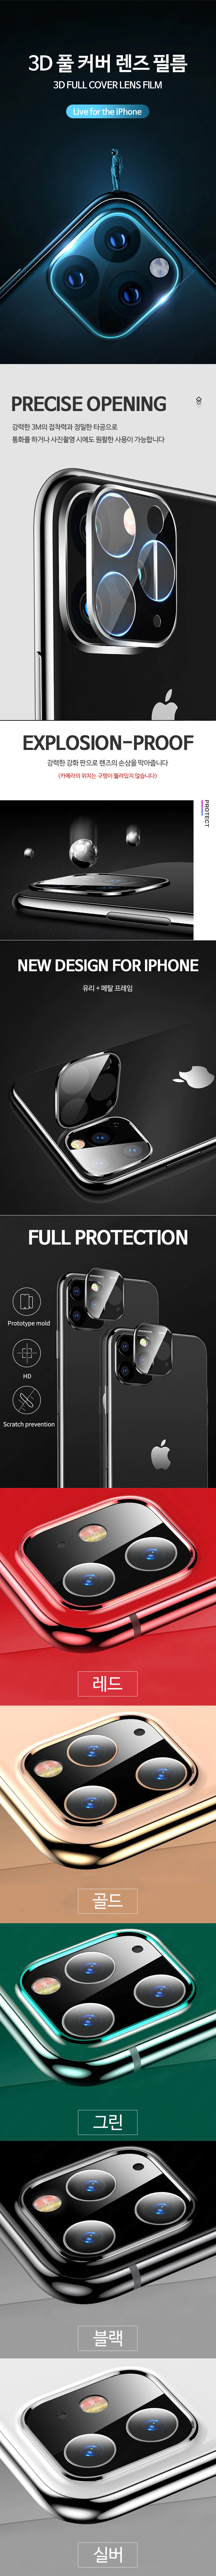 아이폰11 pro max 후면카메라 렌즈 풀커버 필름 7,900원 - 유비에이씨씨 디지털, 모바일 액세서리, 보호필름, 애플 바보사랑 아이폰11 pro max 후면카메라 렌즈 풀커버 필름 7,900원 - 유비에이씨씨 디지털, 모바일 액세서리, 보호필름, 애플 바보사랑